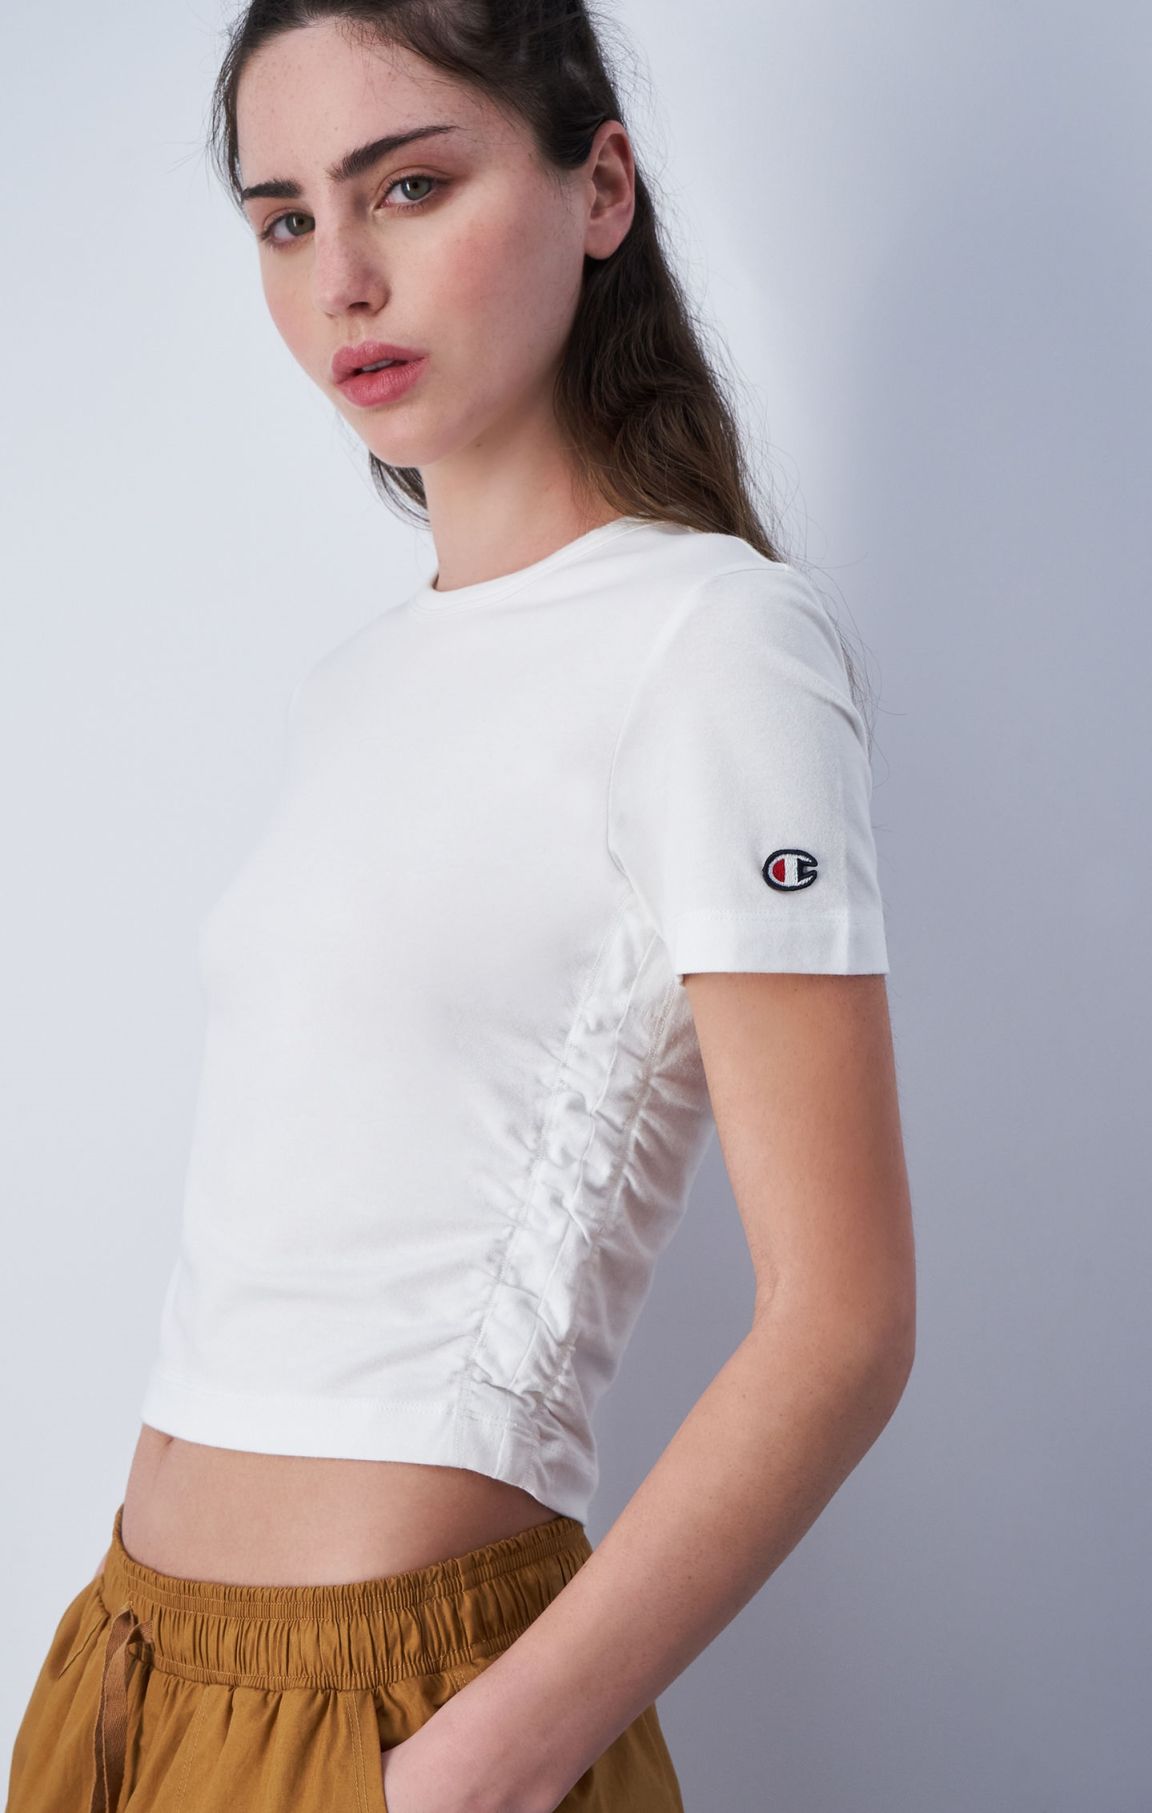 Camiseta corta de algodón con logotipo de la marca bordado